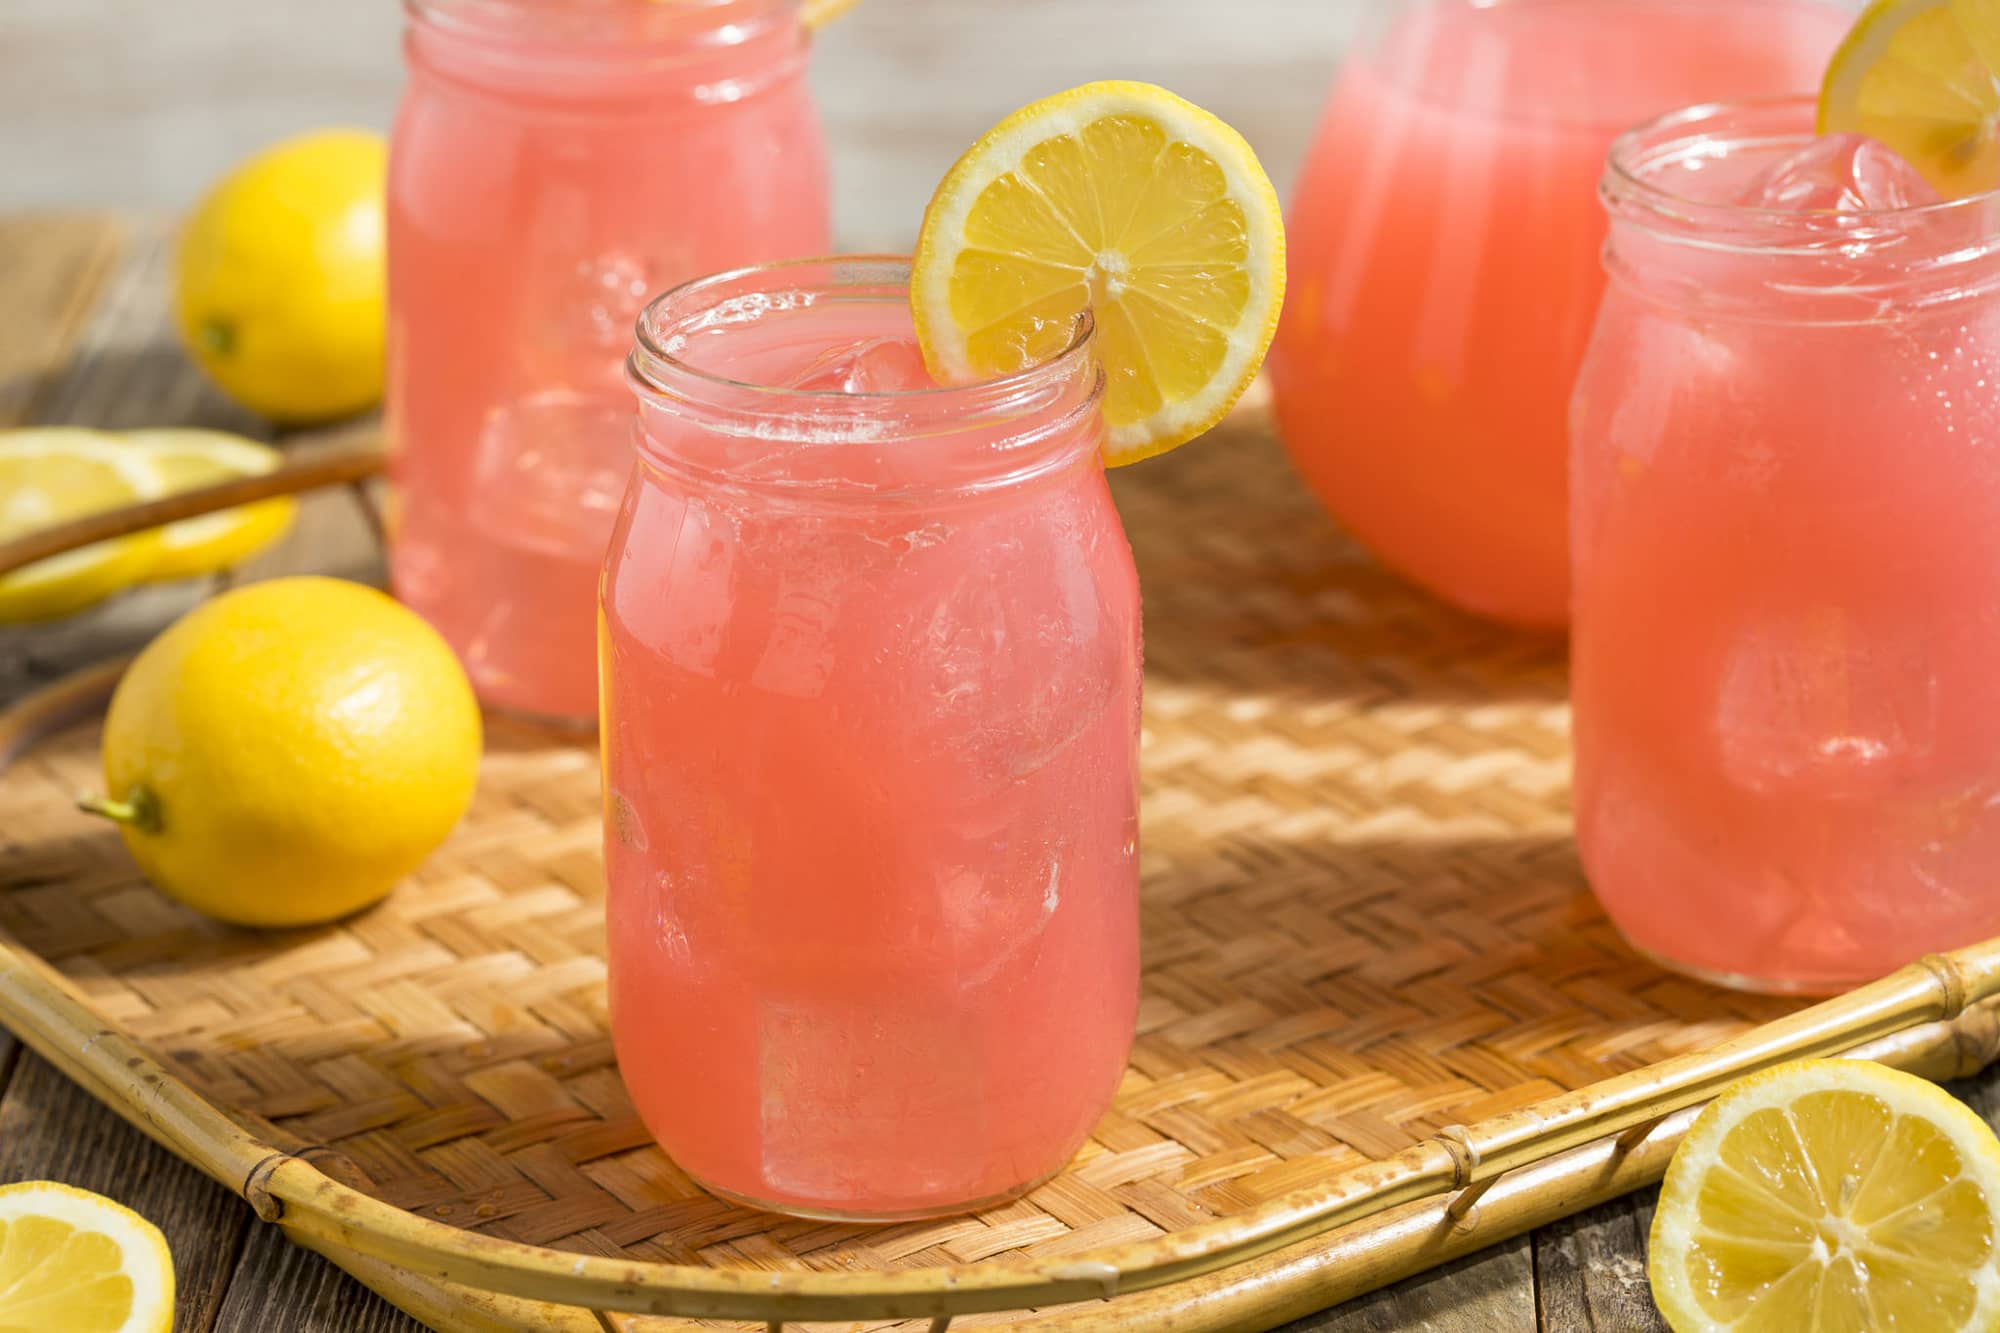 Smirnoff Releases Pink Lemonade Vodka